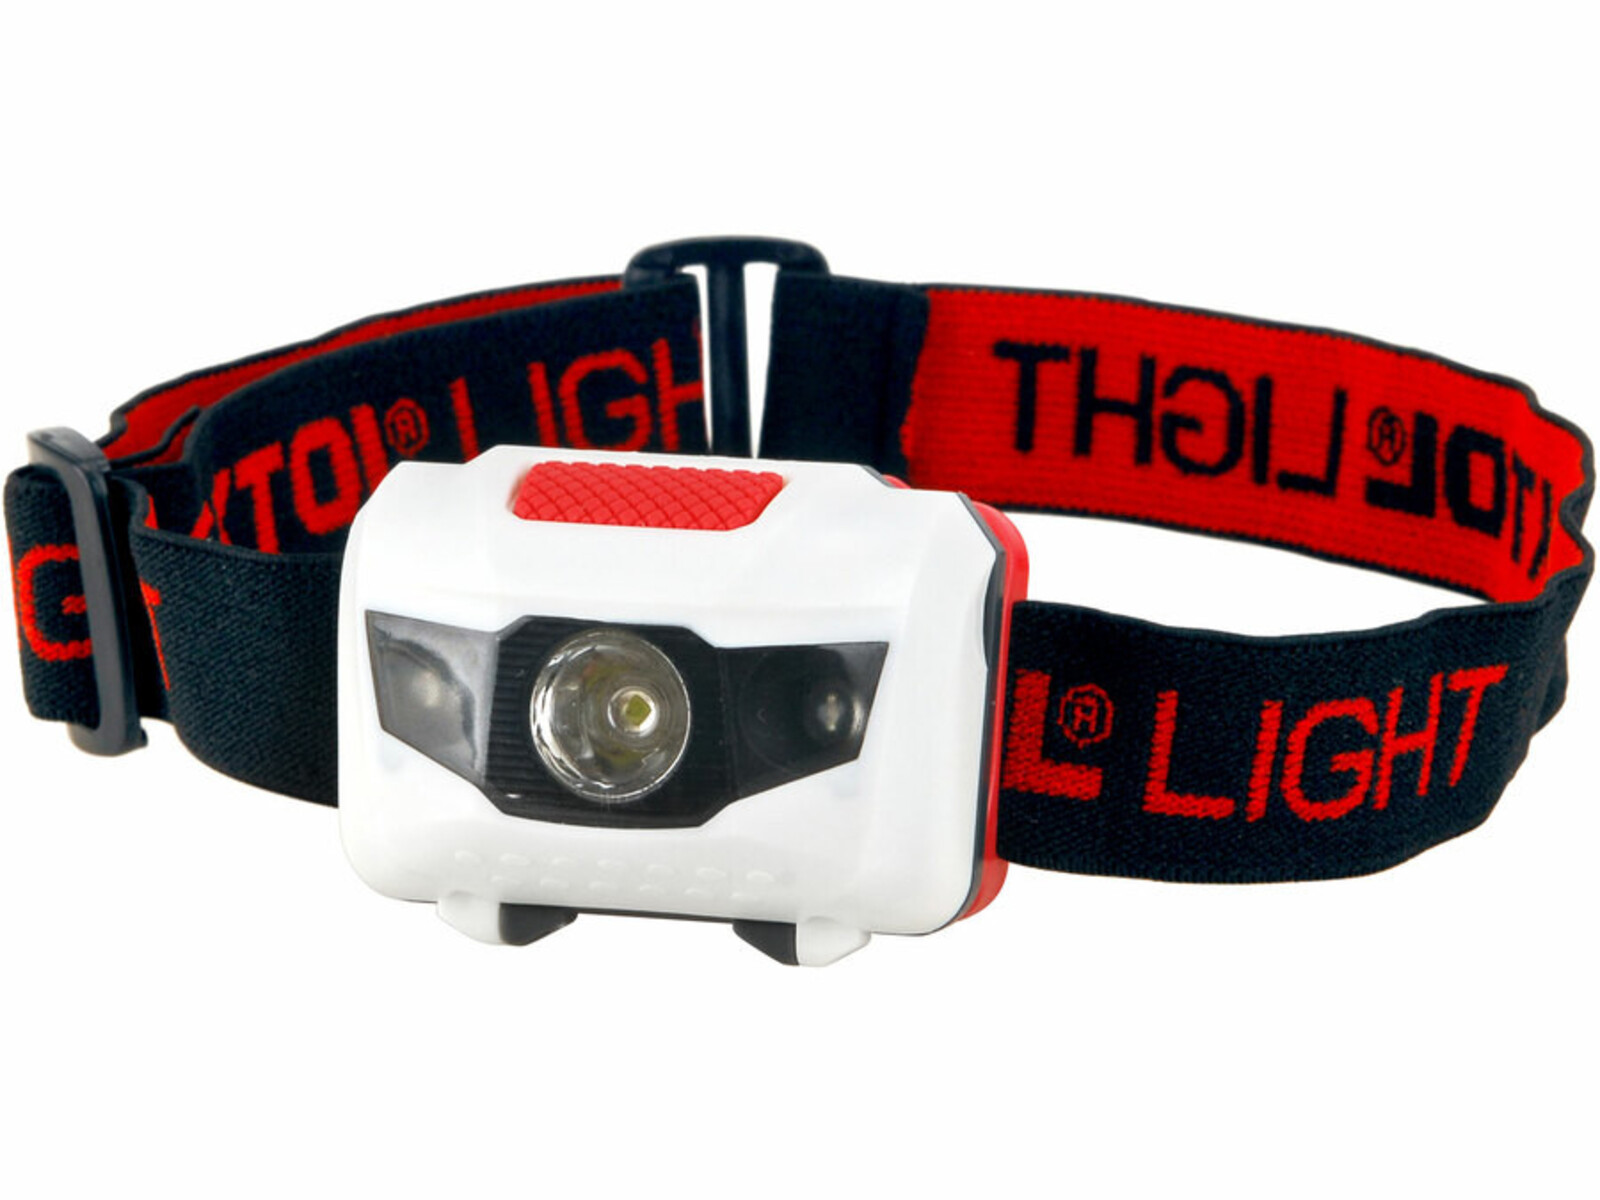 Extol Light 43102 čelovka 40lm, 1W + 2 červené LED, 4 režimy svietenia, napájanie 3xAAA - farba: čierna/červená